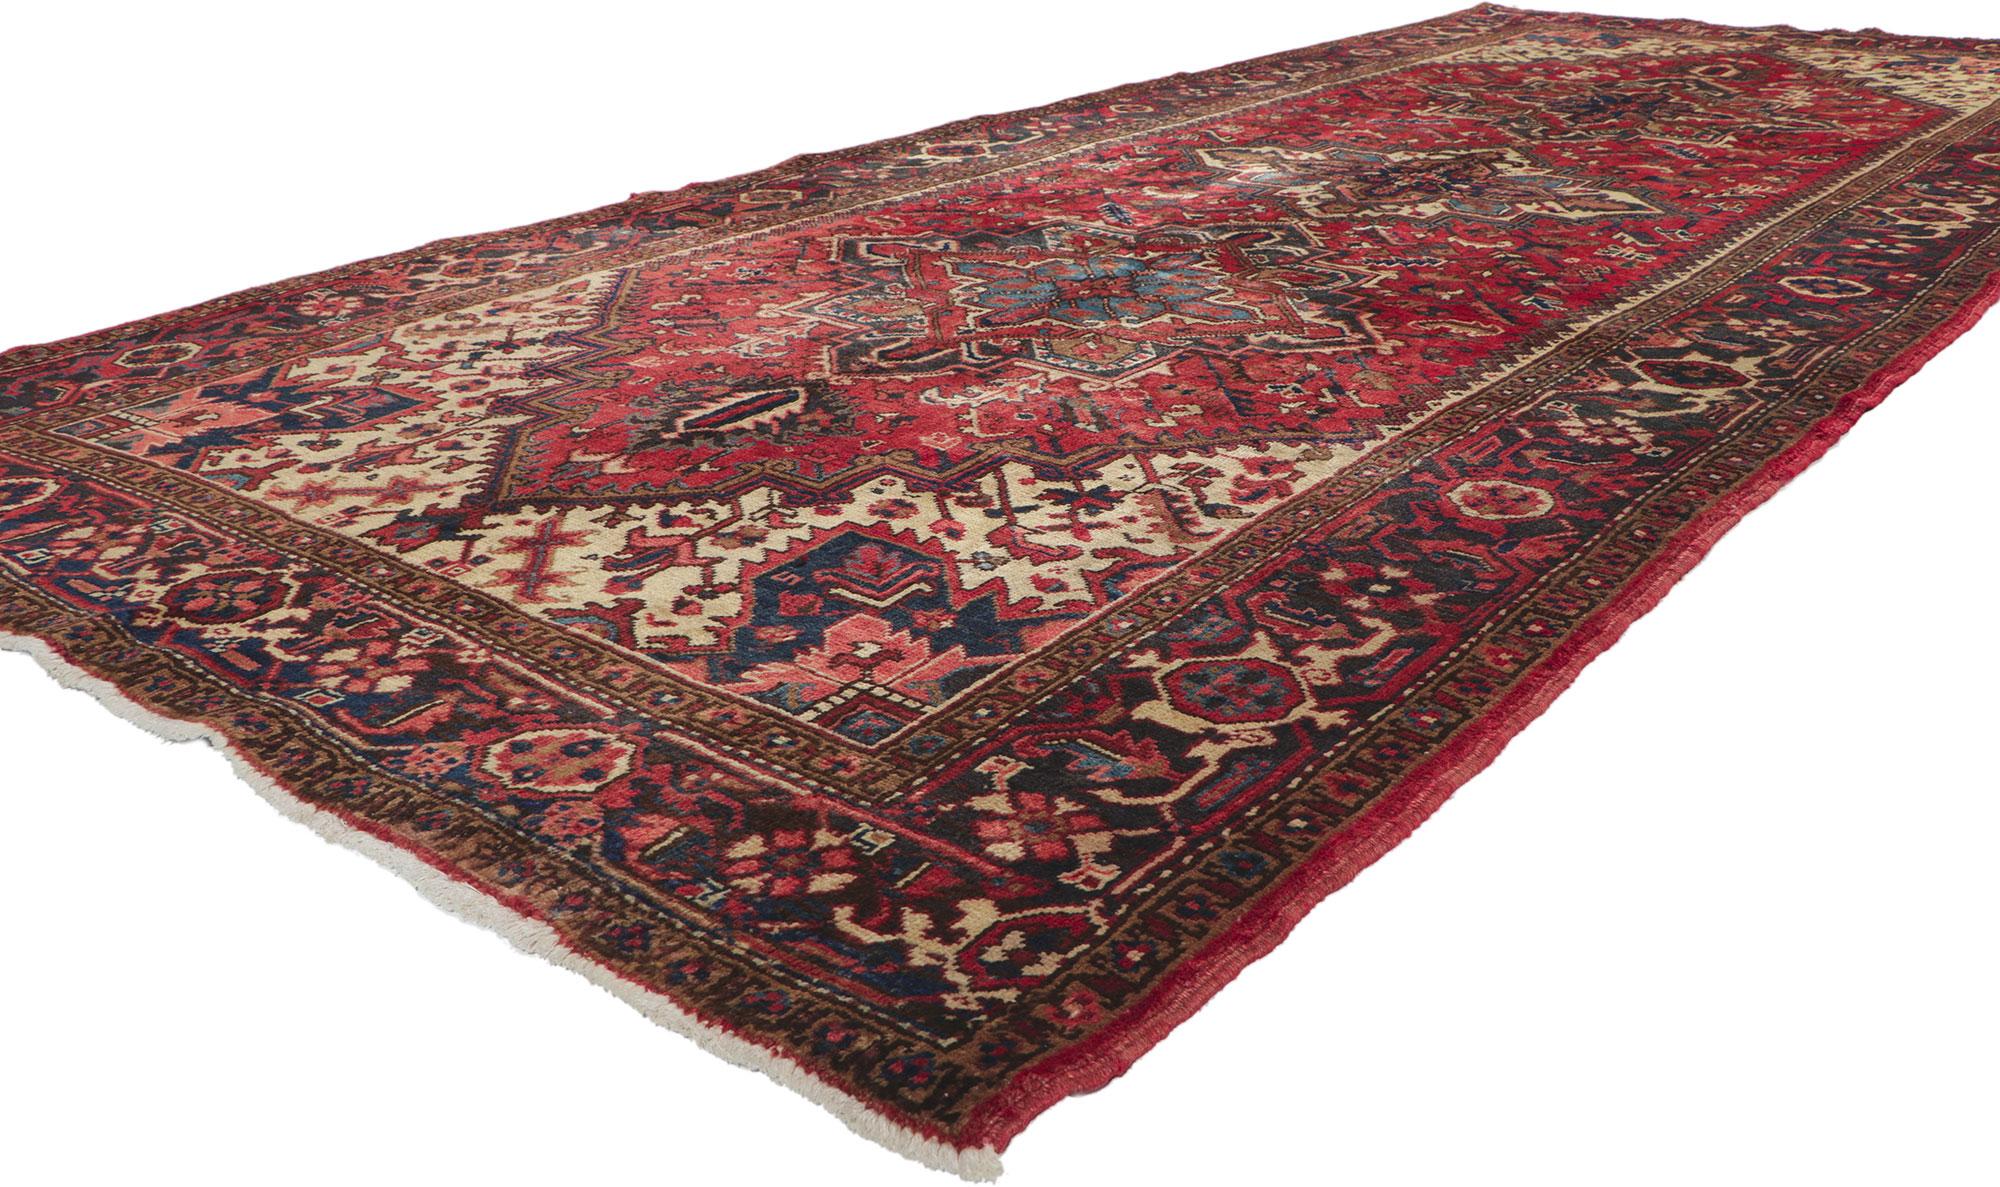 61089 Vintage Persian Heriz gallery rug, 05'05 x 12'10.